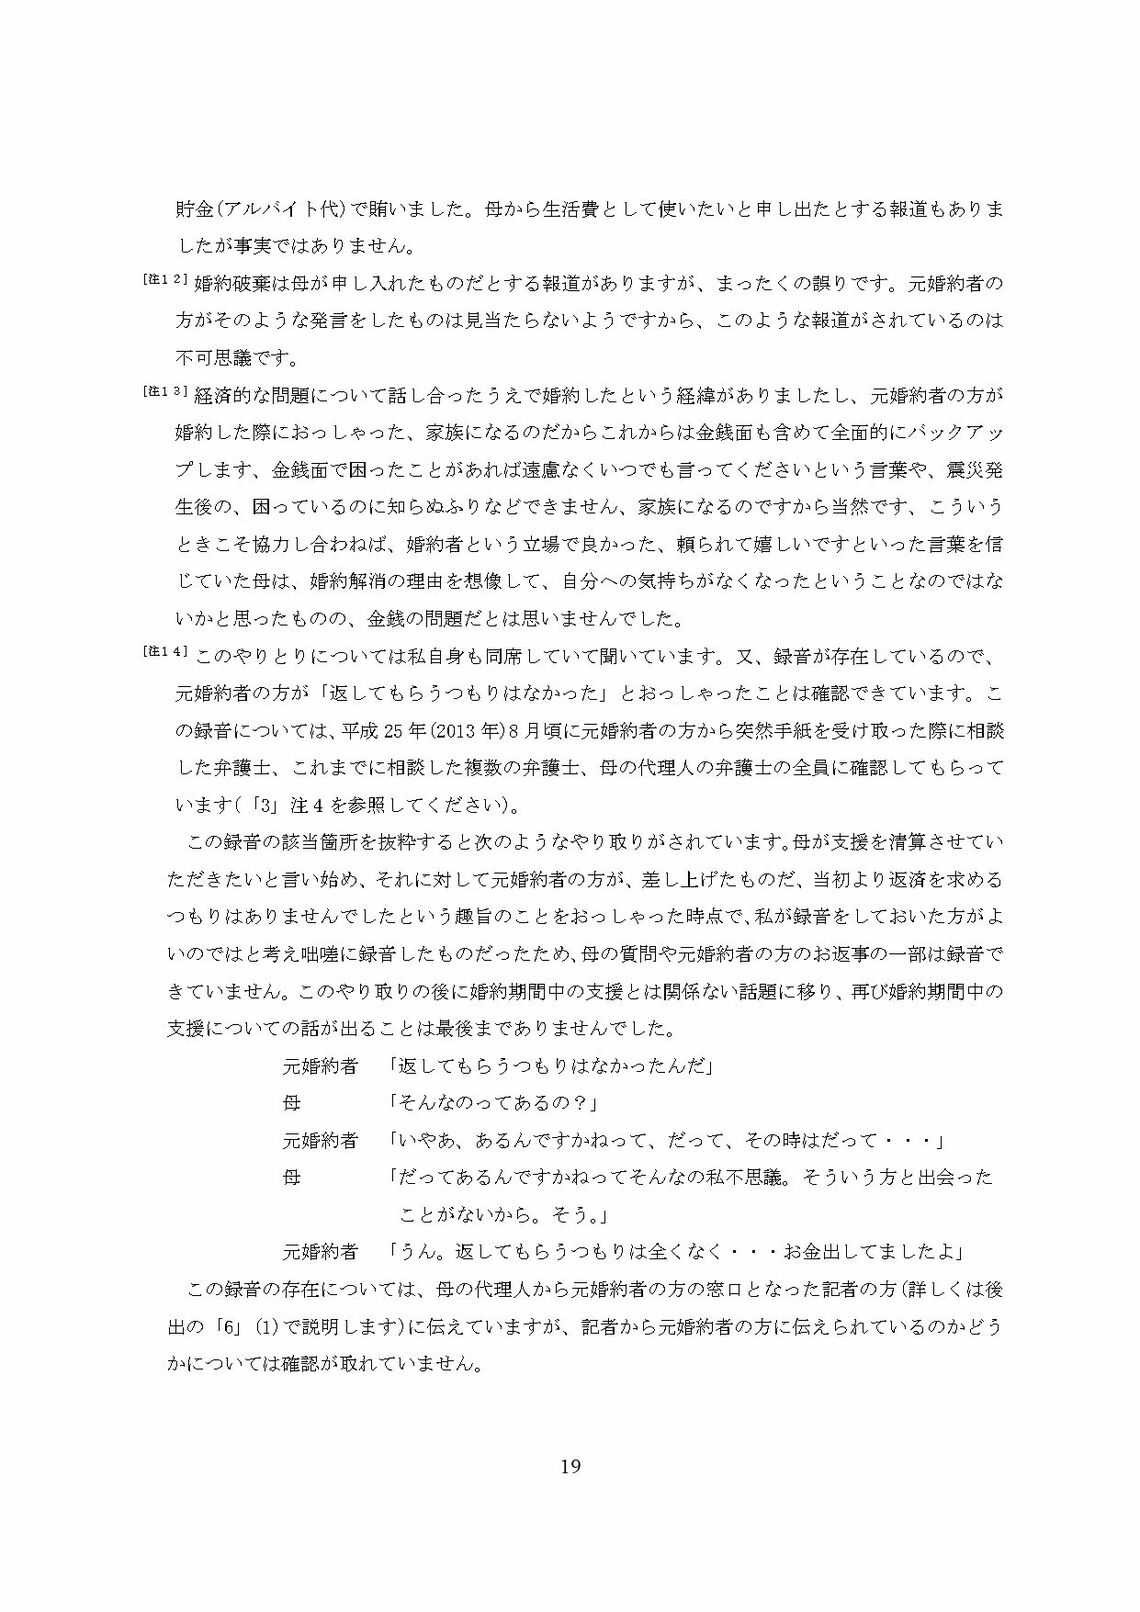 小室圭氏の代理人より届いた文書本文の脚注（19ページ目）（写真：週刊女性PRIME）